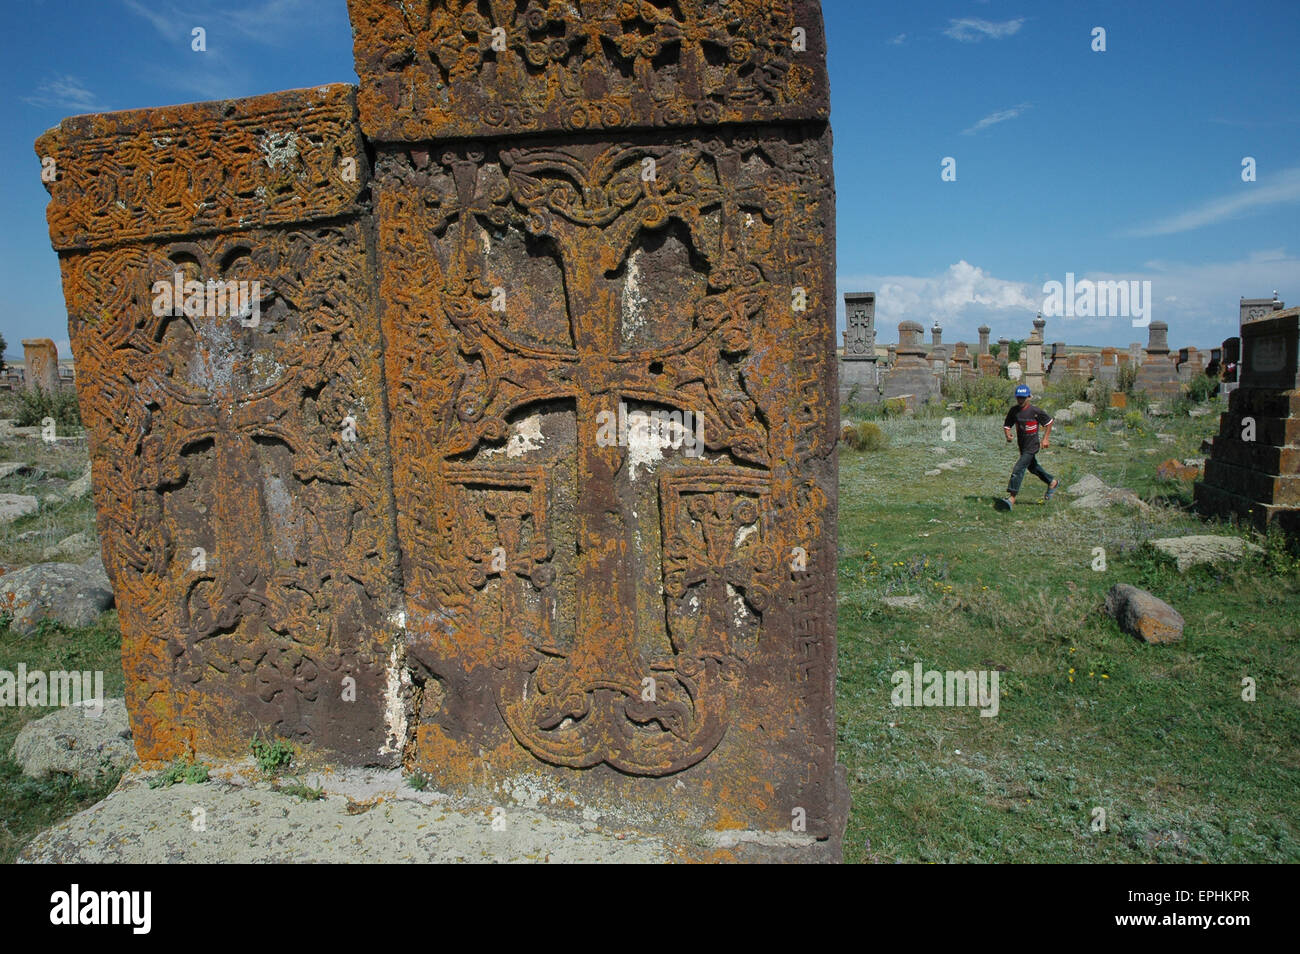 Armenia, Noratus cemetery Stock Photo